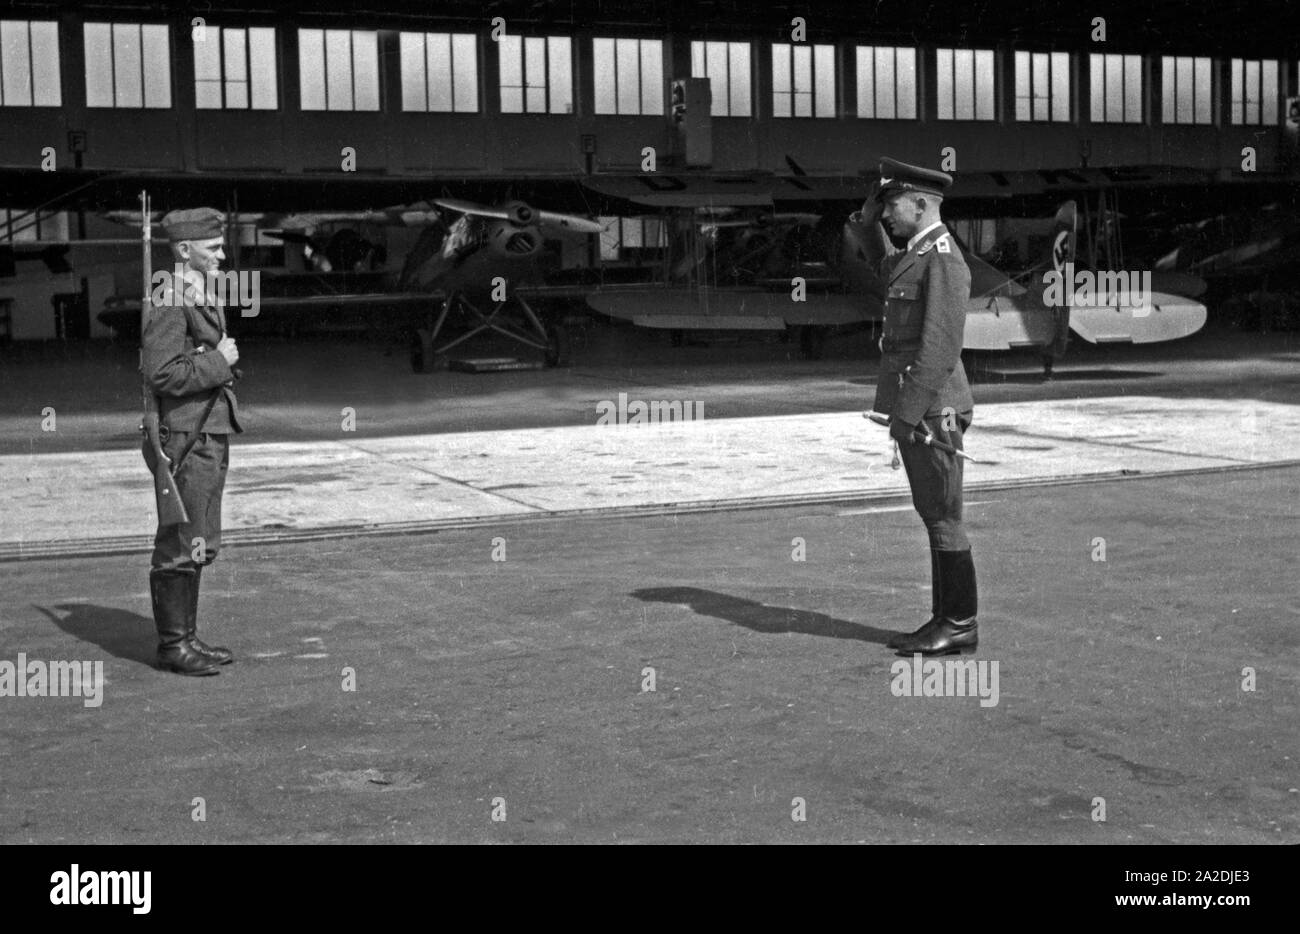 Wachsoldat bei der Meldung an den Offizier am Hangar der Flieger Ausbildungsstelle Schönwalde, Deutschland 1930er Jahre. Soldier on sentinel and officer at a hangar, Germany 1930s. Stock Photo